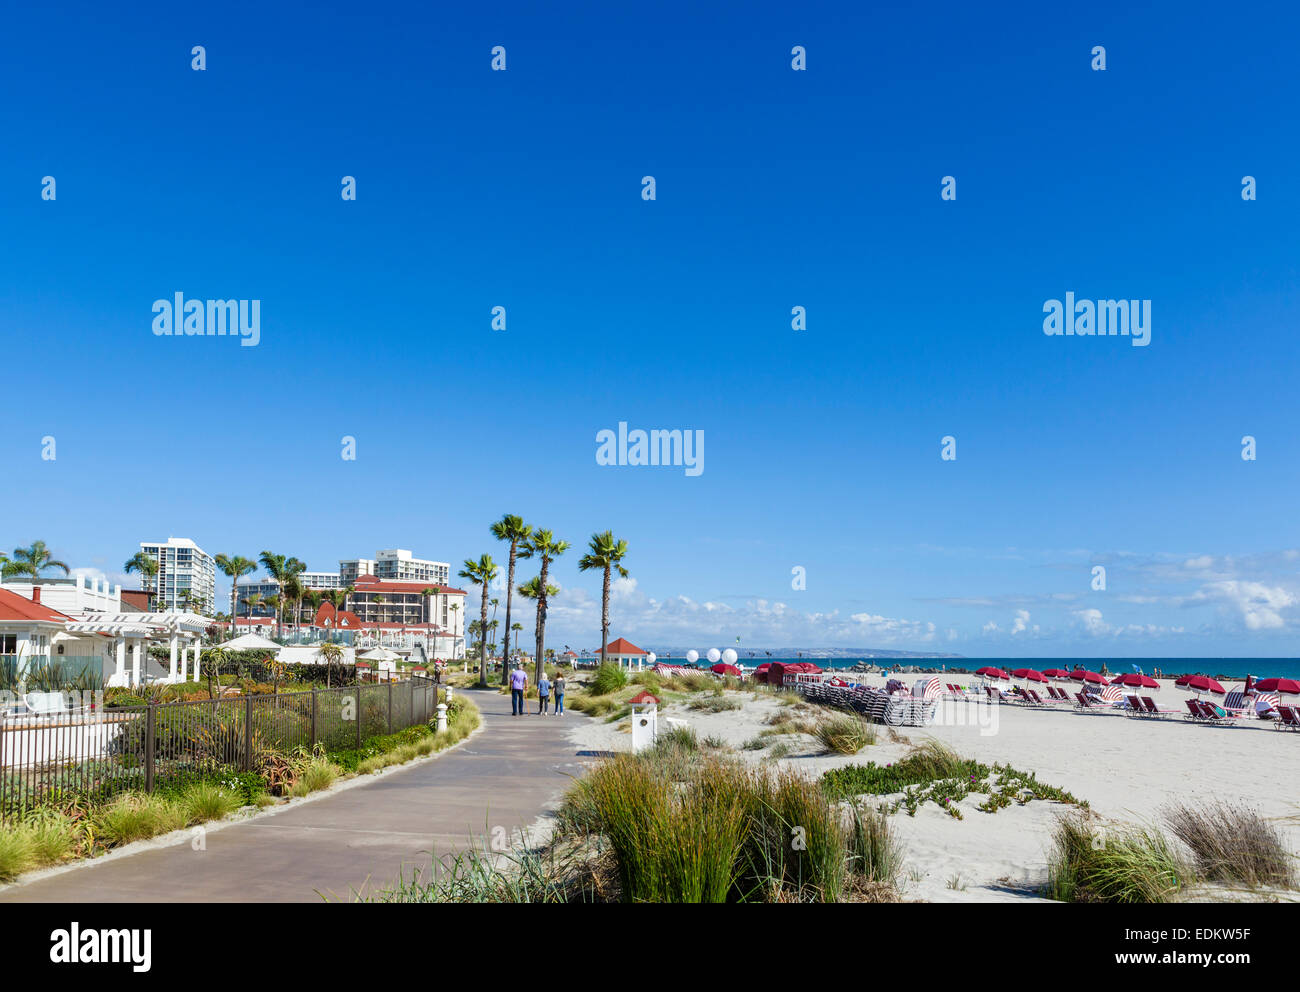 La plage devant l'hôtel del Coronado, Coronado Beach, San Diego, California, USA Banque D'Images